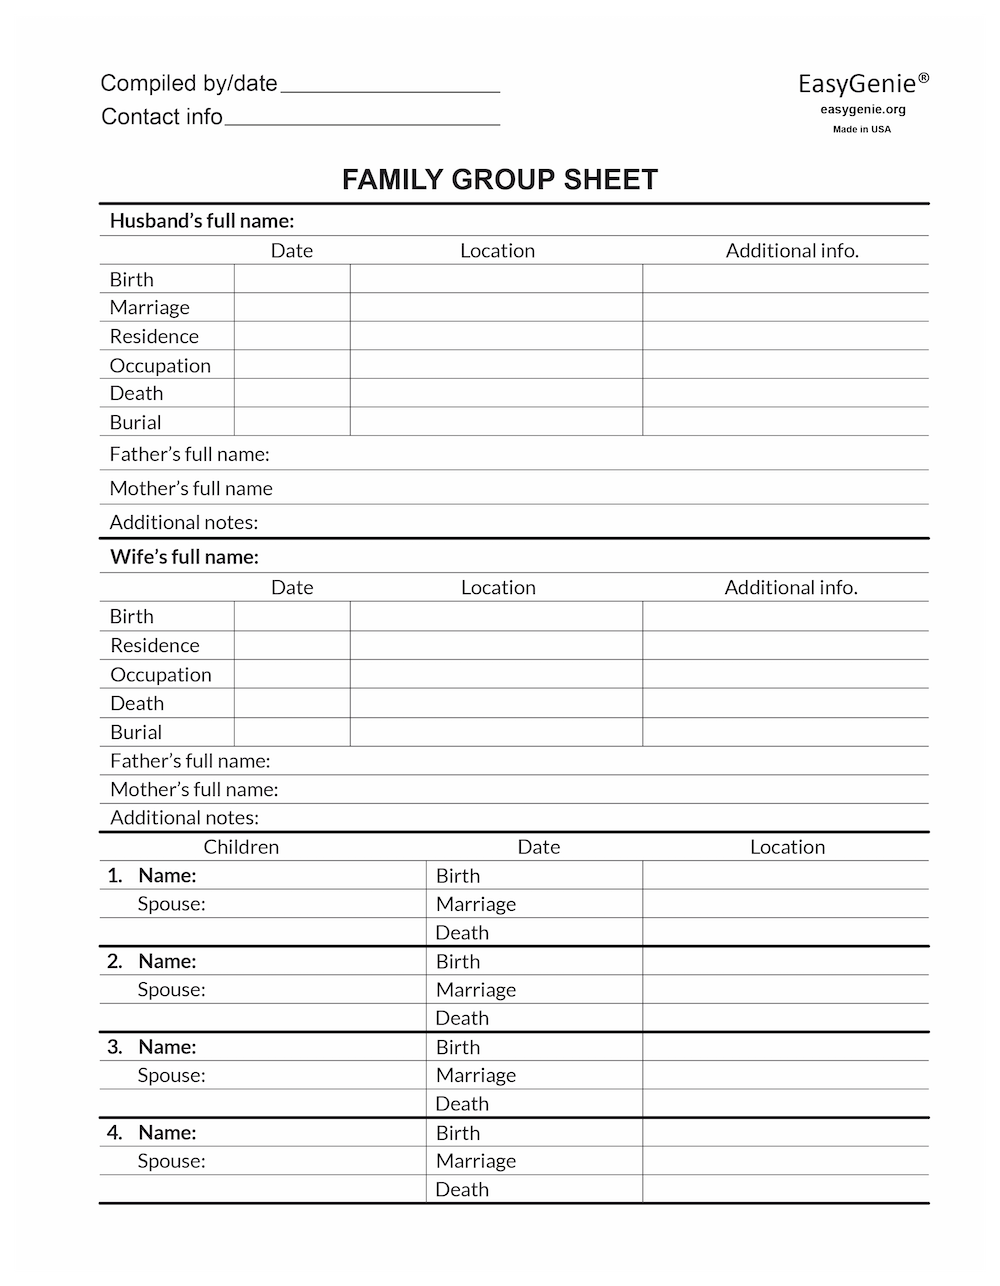 Pedigree worksheet PDF set | LARGE PRINT fillable pedigree chart & family group sheet